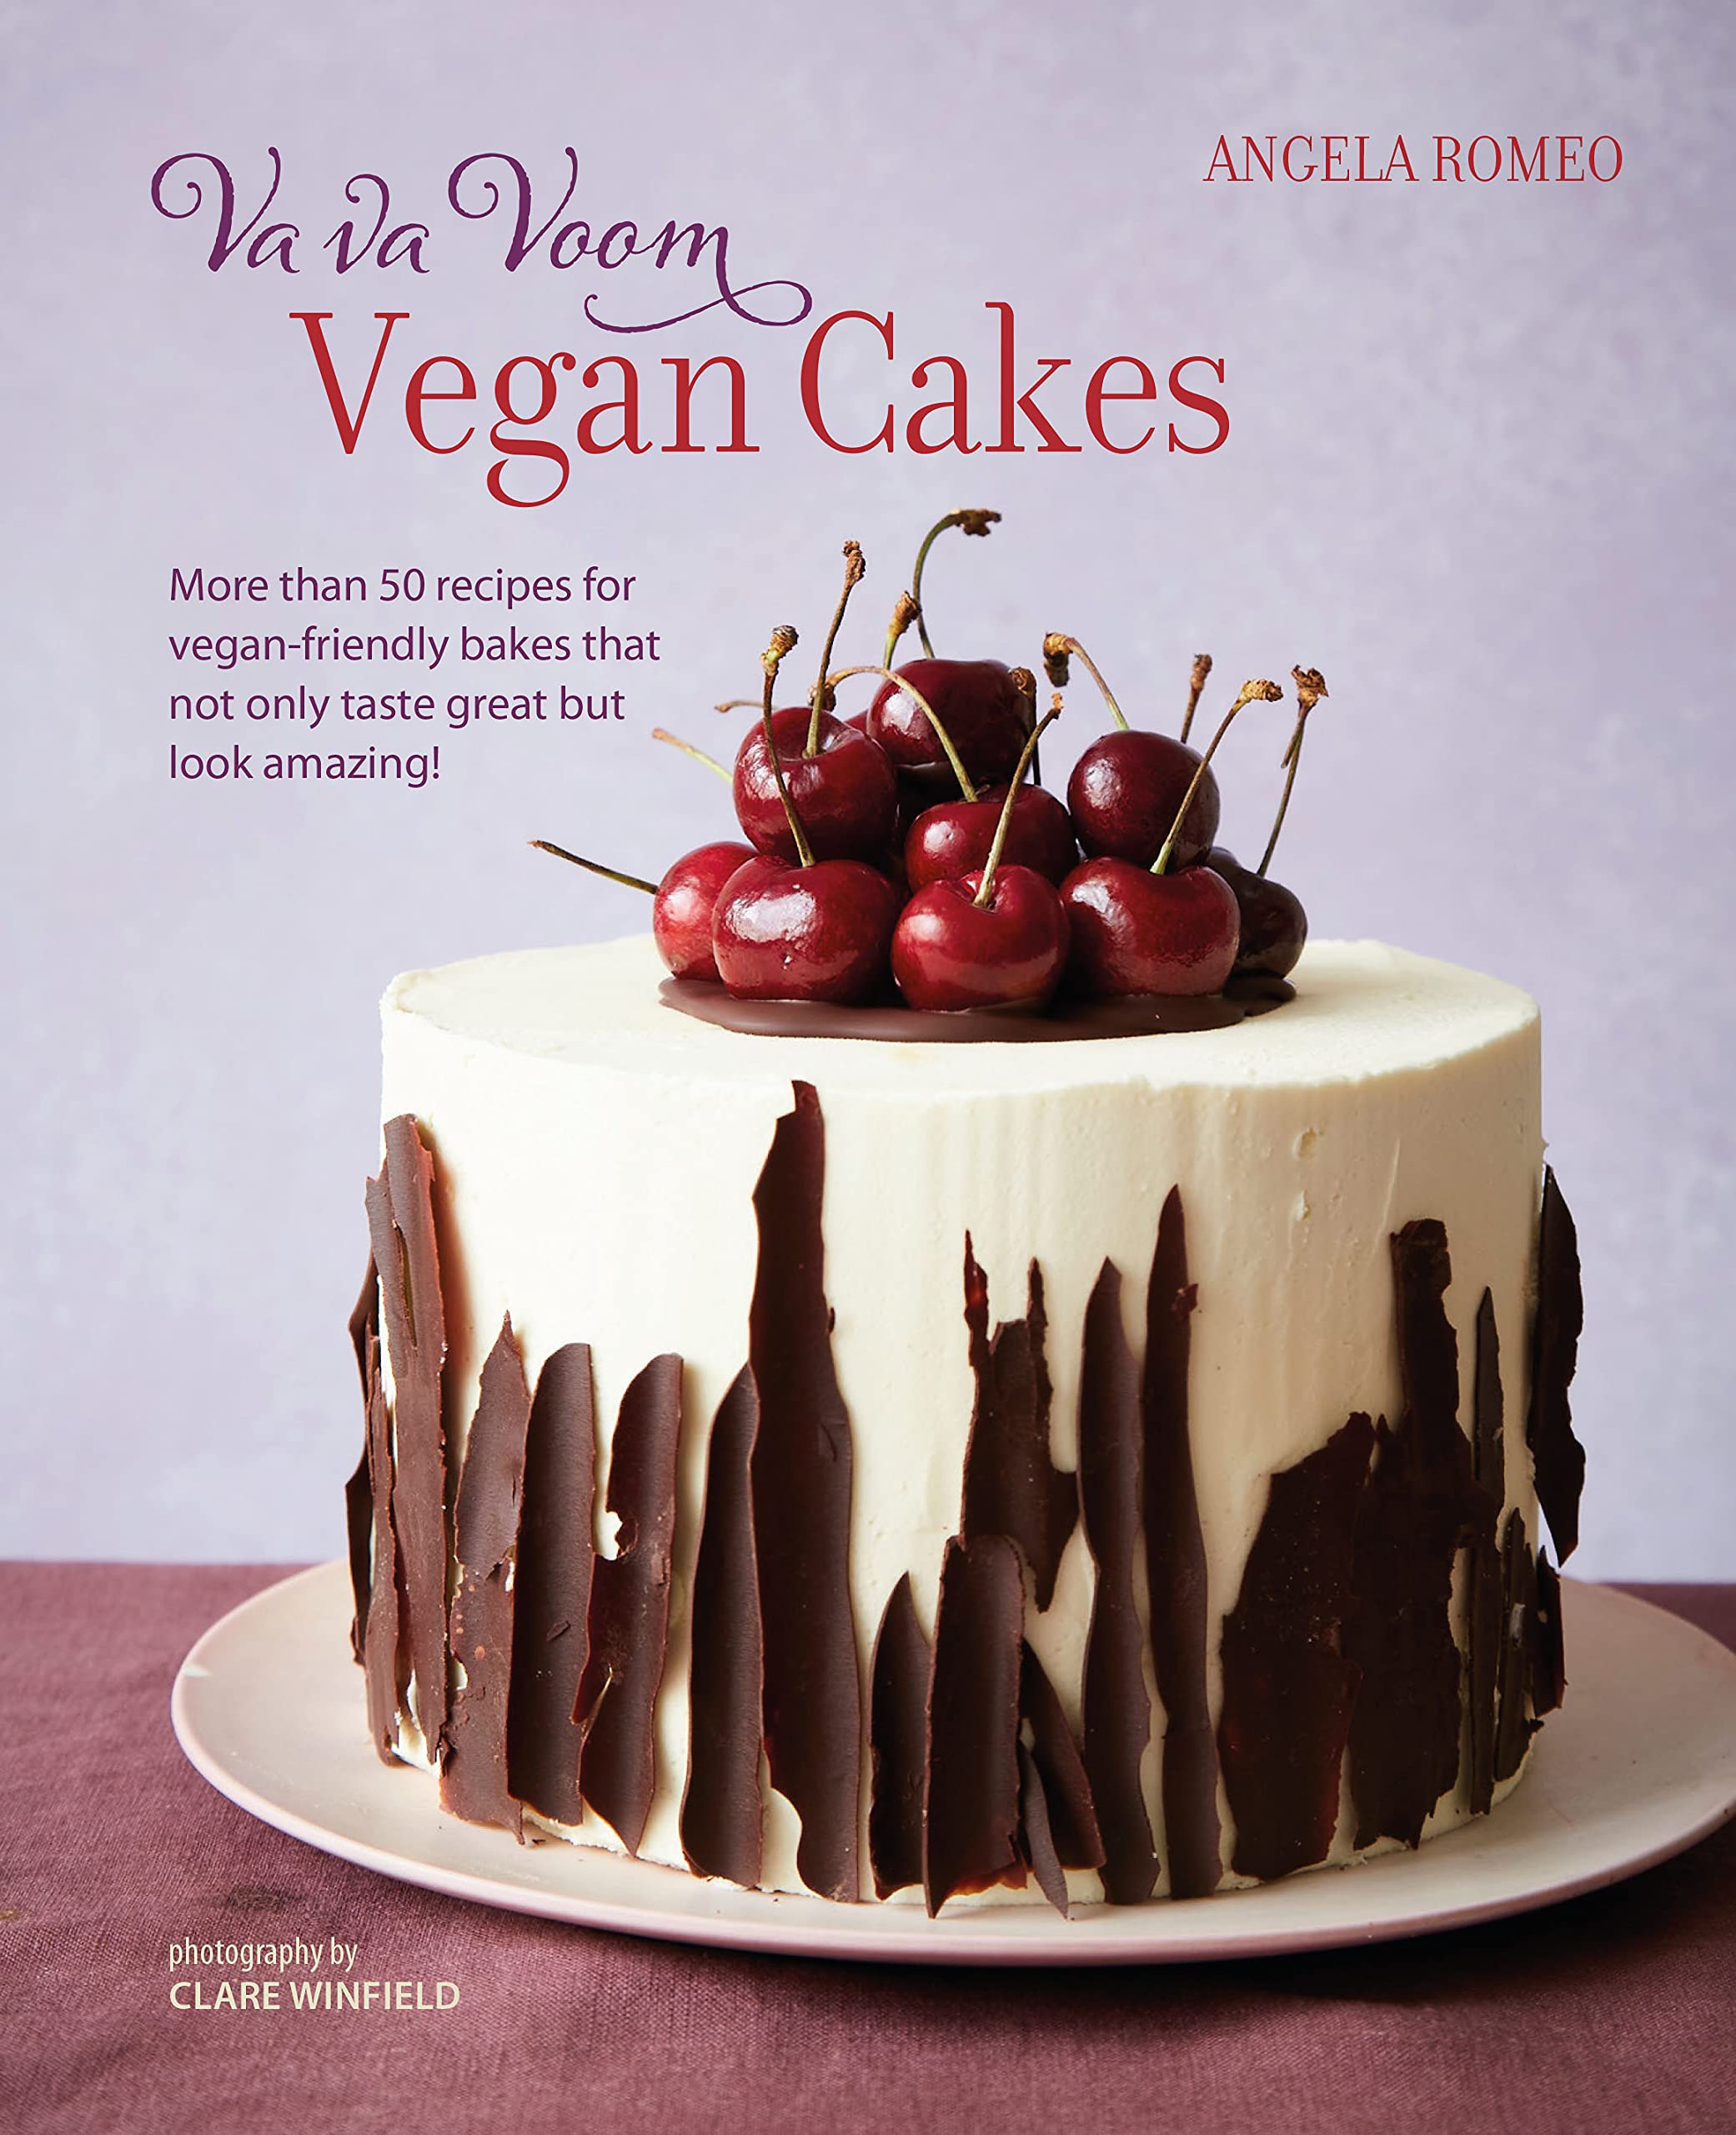 Va va Voom Vegan Cakes | Angela Romeo